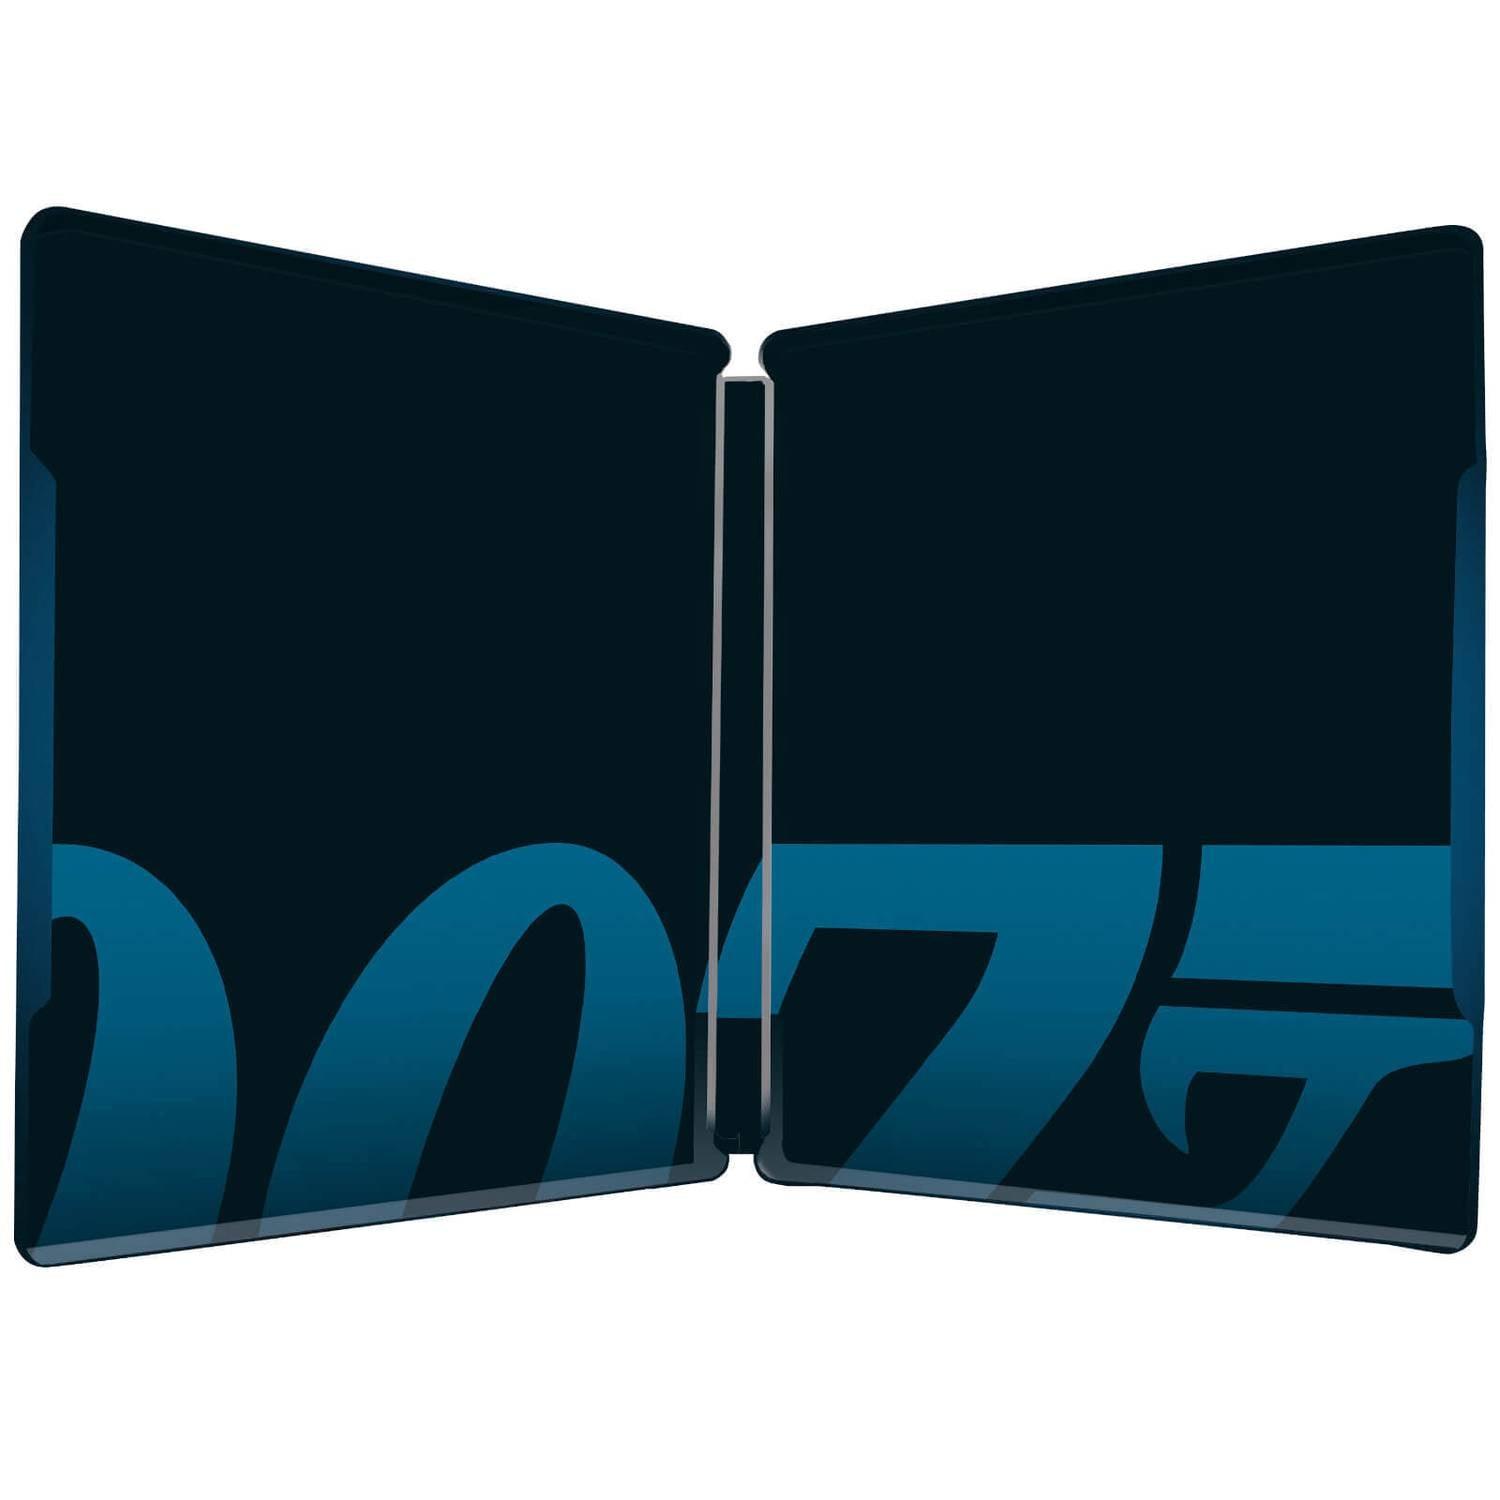 007: СПЕКТР (англ. язык) (4K UHD + Blu-ray) Steelbook